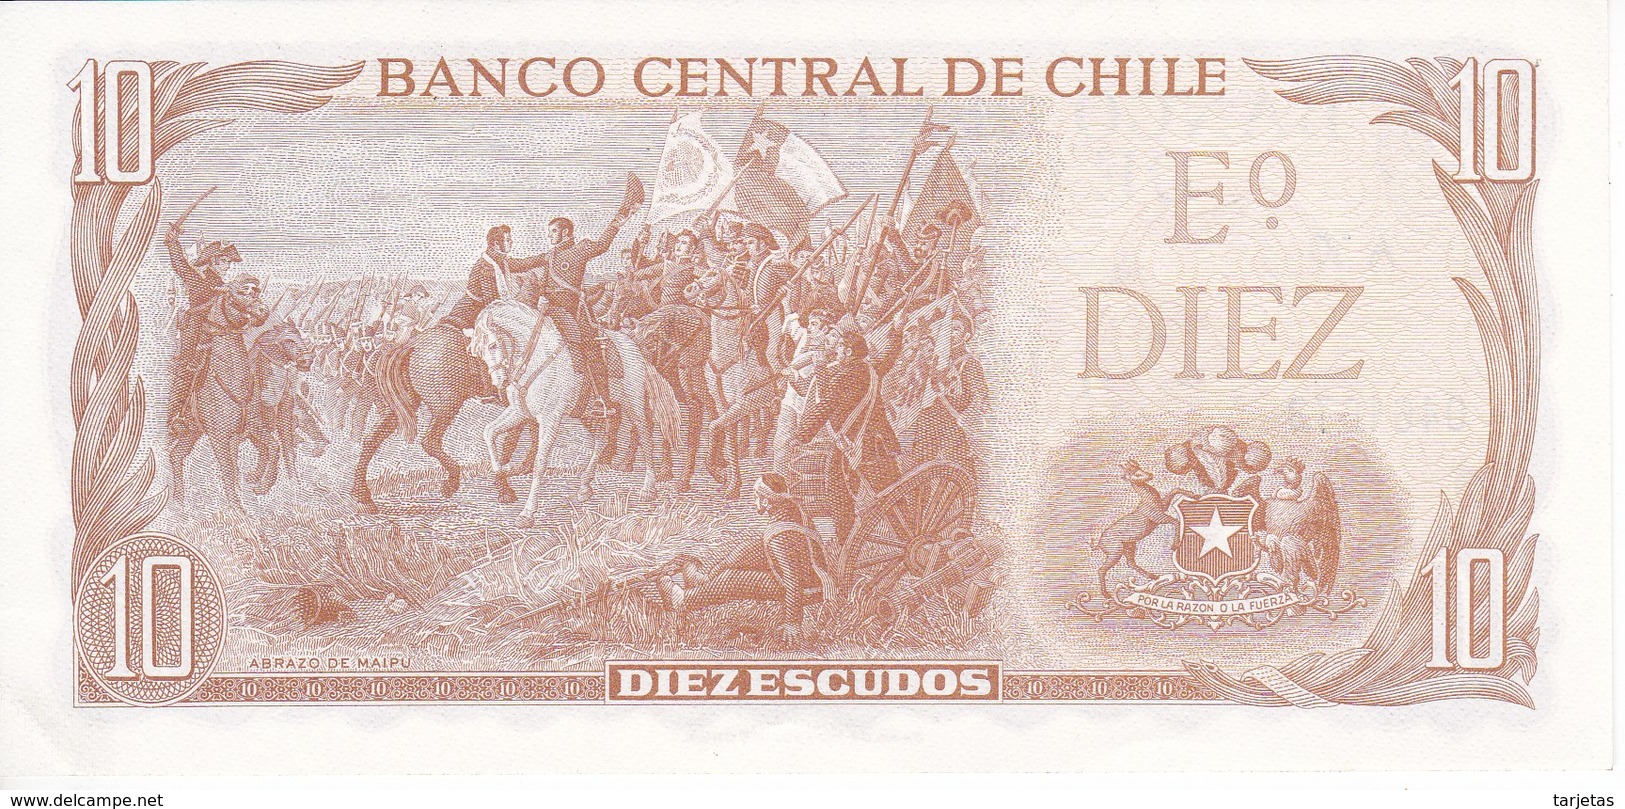 BILLETE DE CHILE DE 10 PESOS DE BALMACEDA DEL AÑO 1970 SIN CIRCULAR - UNCIRCULATED (BANK NOTE) - Chile